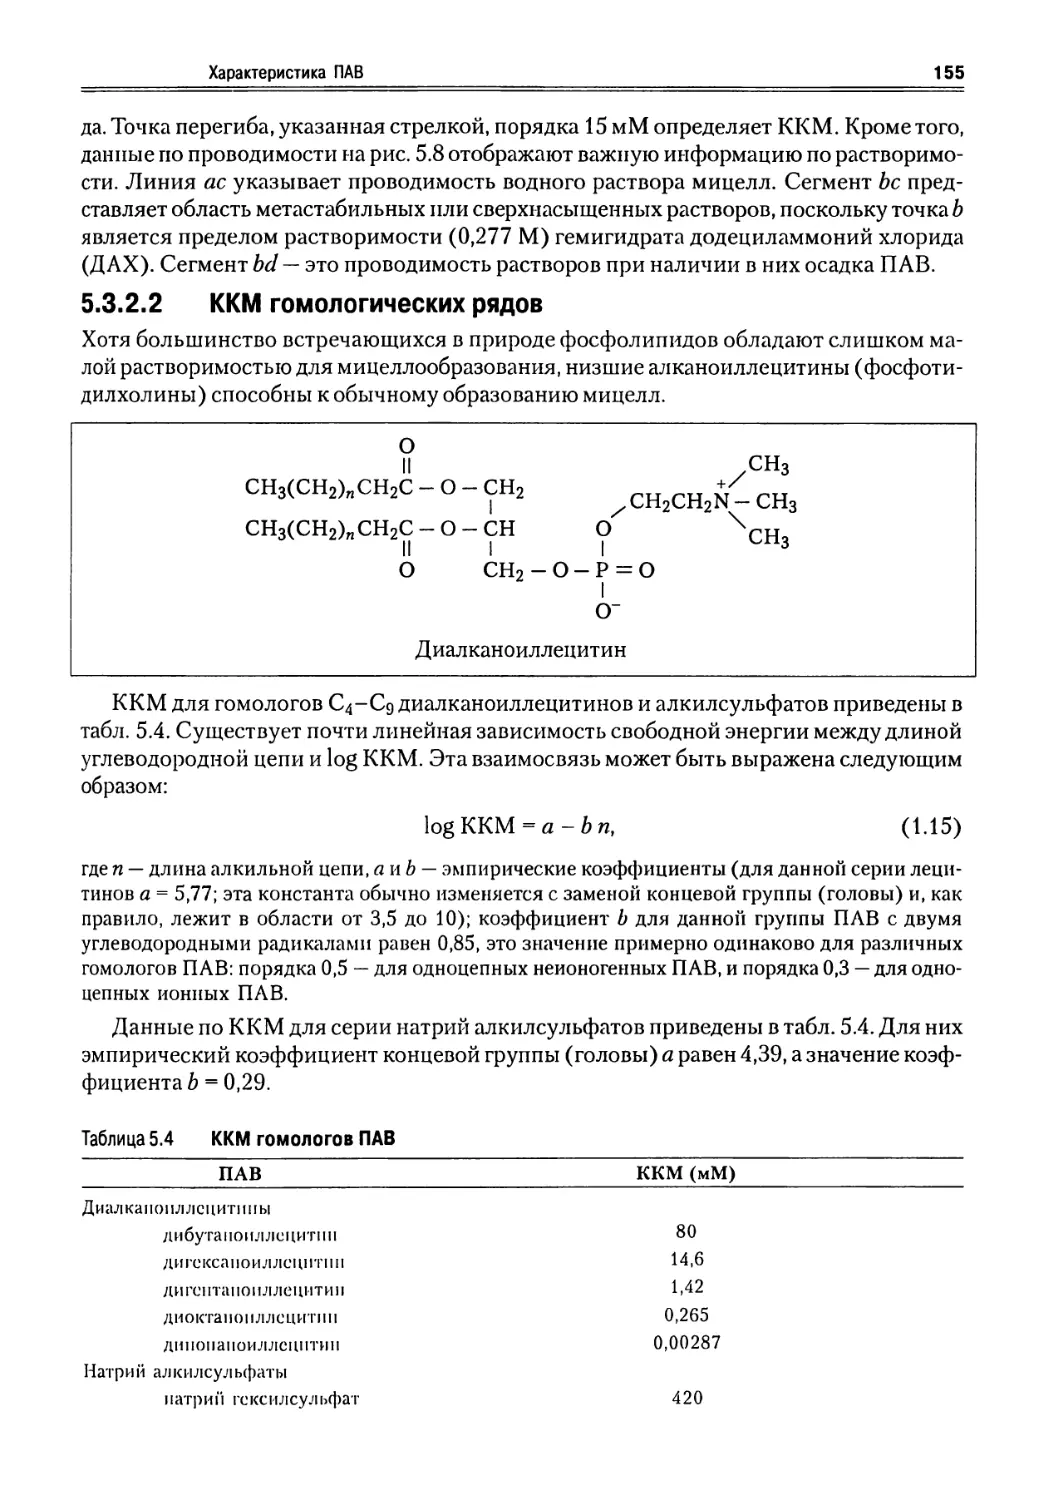 5.3.2.3 Влияние солевого эффекта на ккм
5.3.3 Растворимость ПАВ